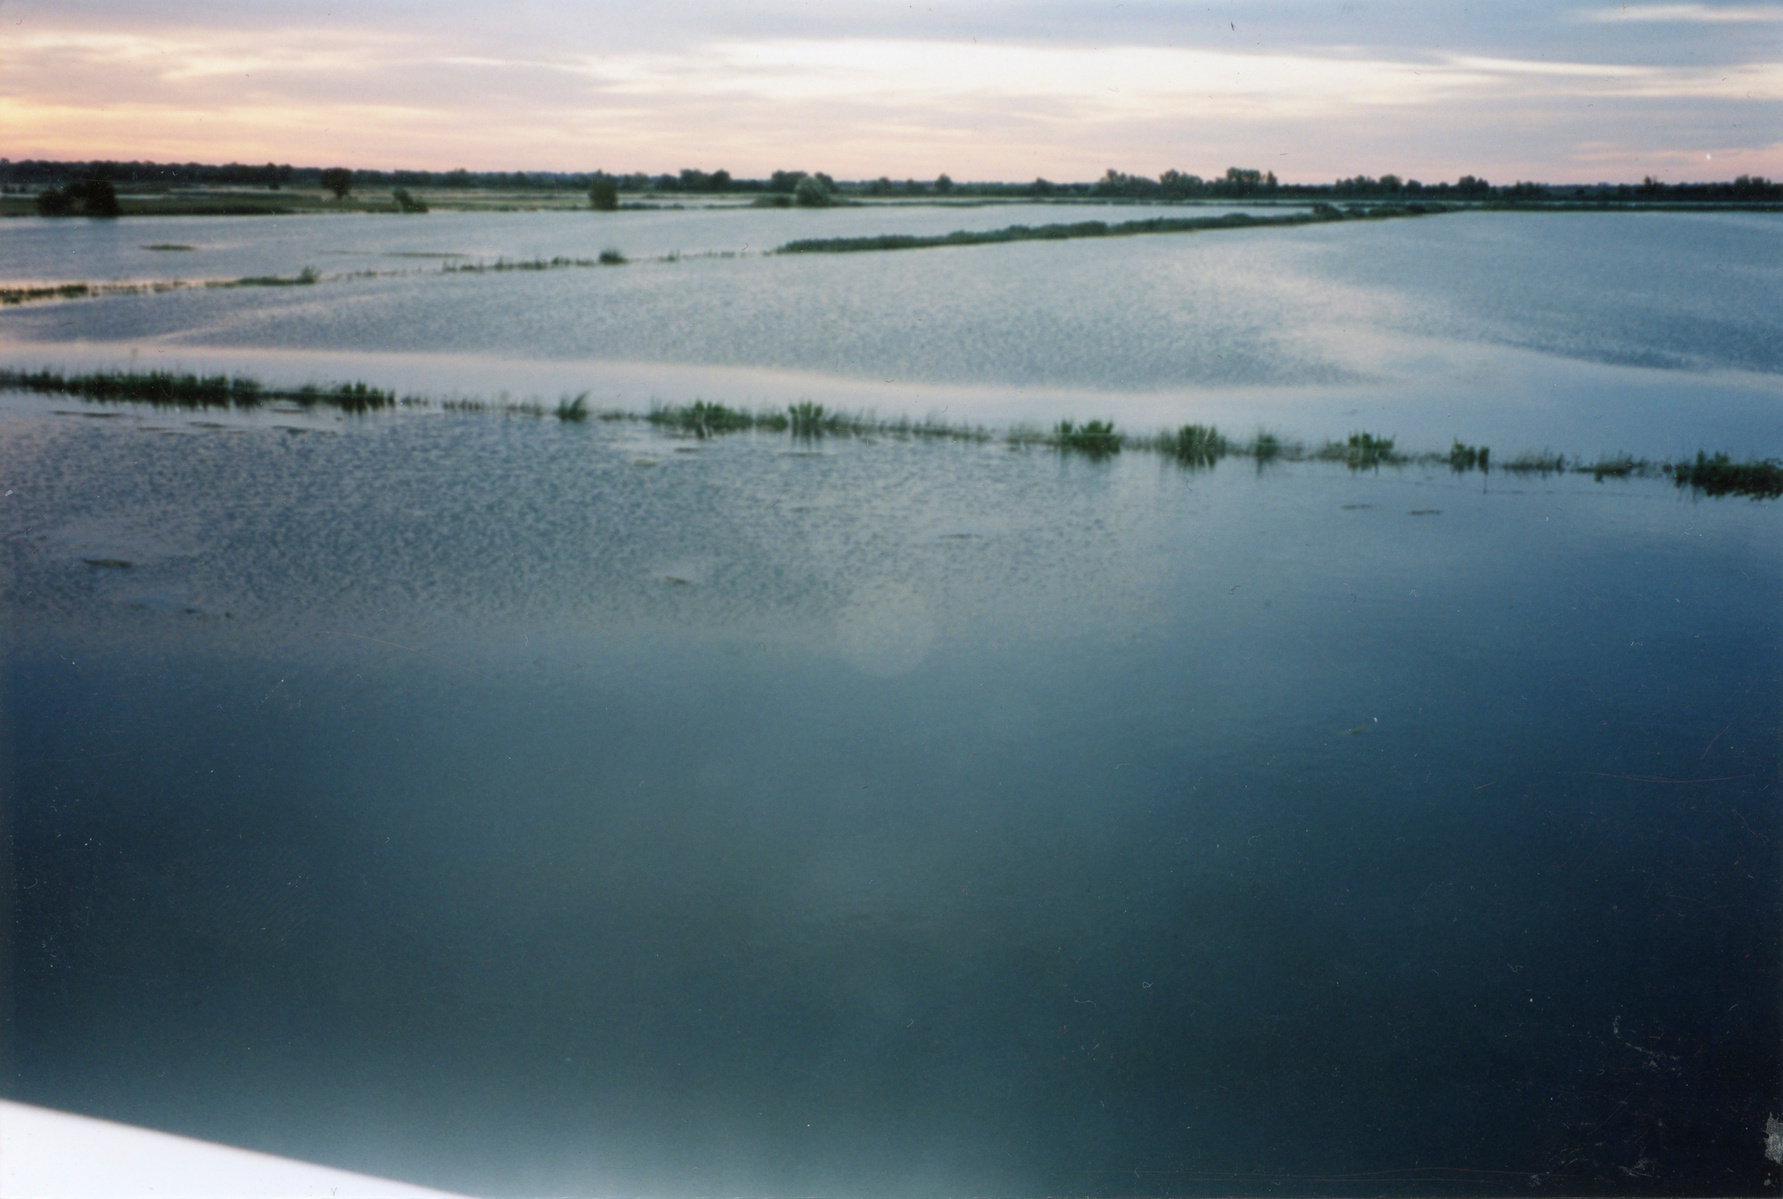 Inondation 2003 Arles, Photographie d’archive de Mme Evelyne G.